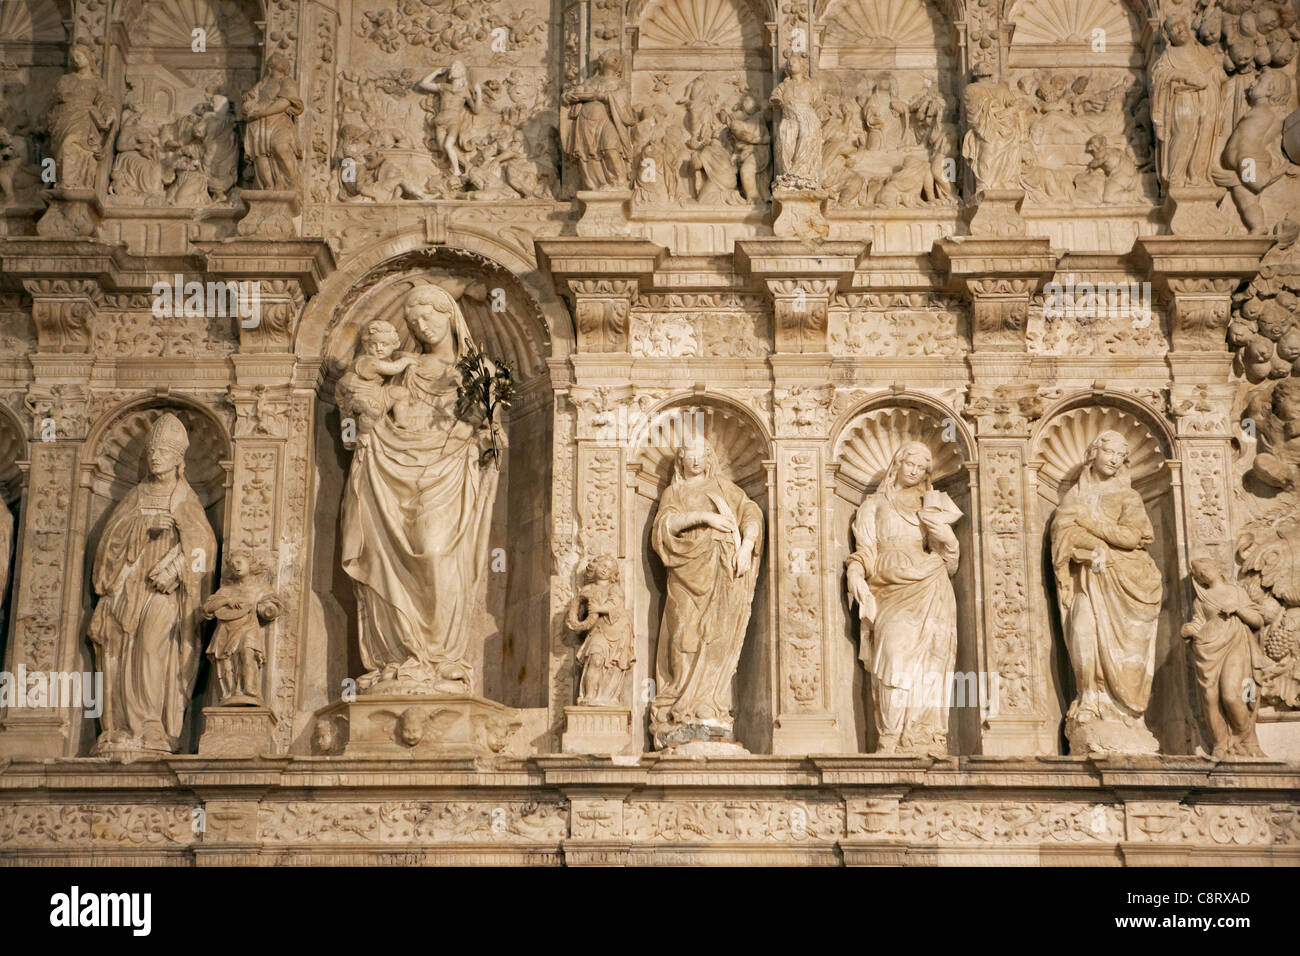 Detail of the altar at the Royal Abbey of Santa Maria de Poblet. Vimbodi i Poblet, Catalonia, Spain. Stock Photo